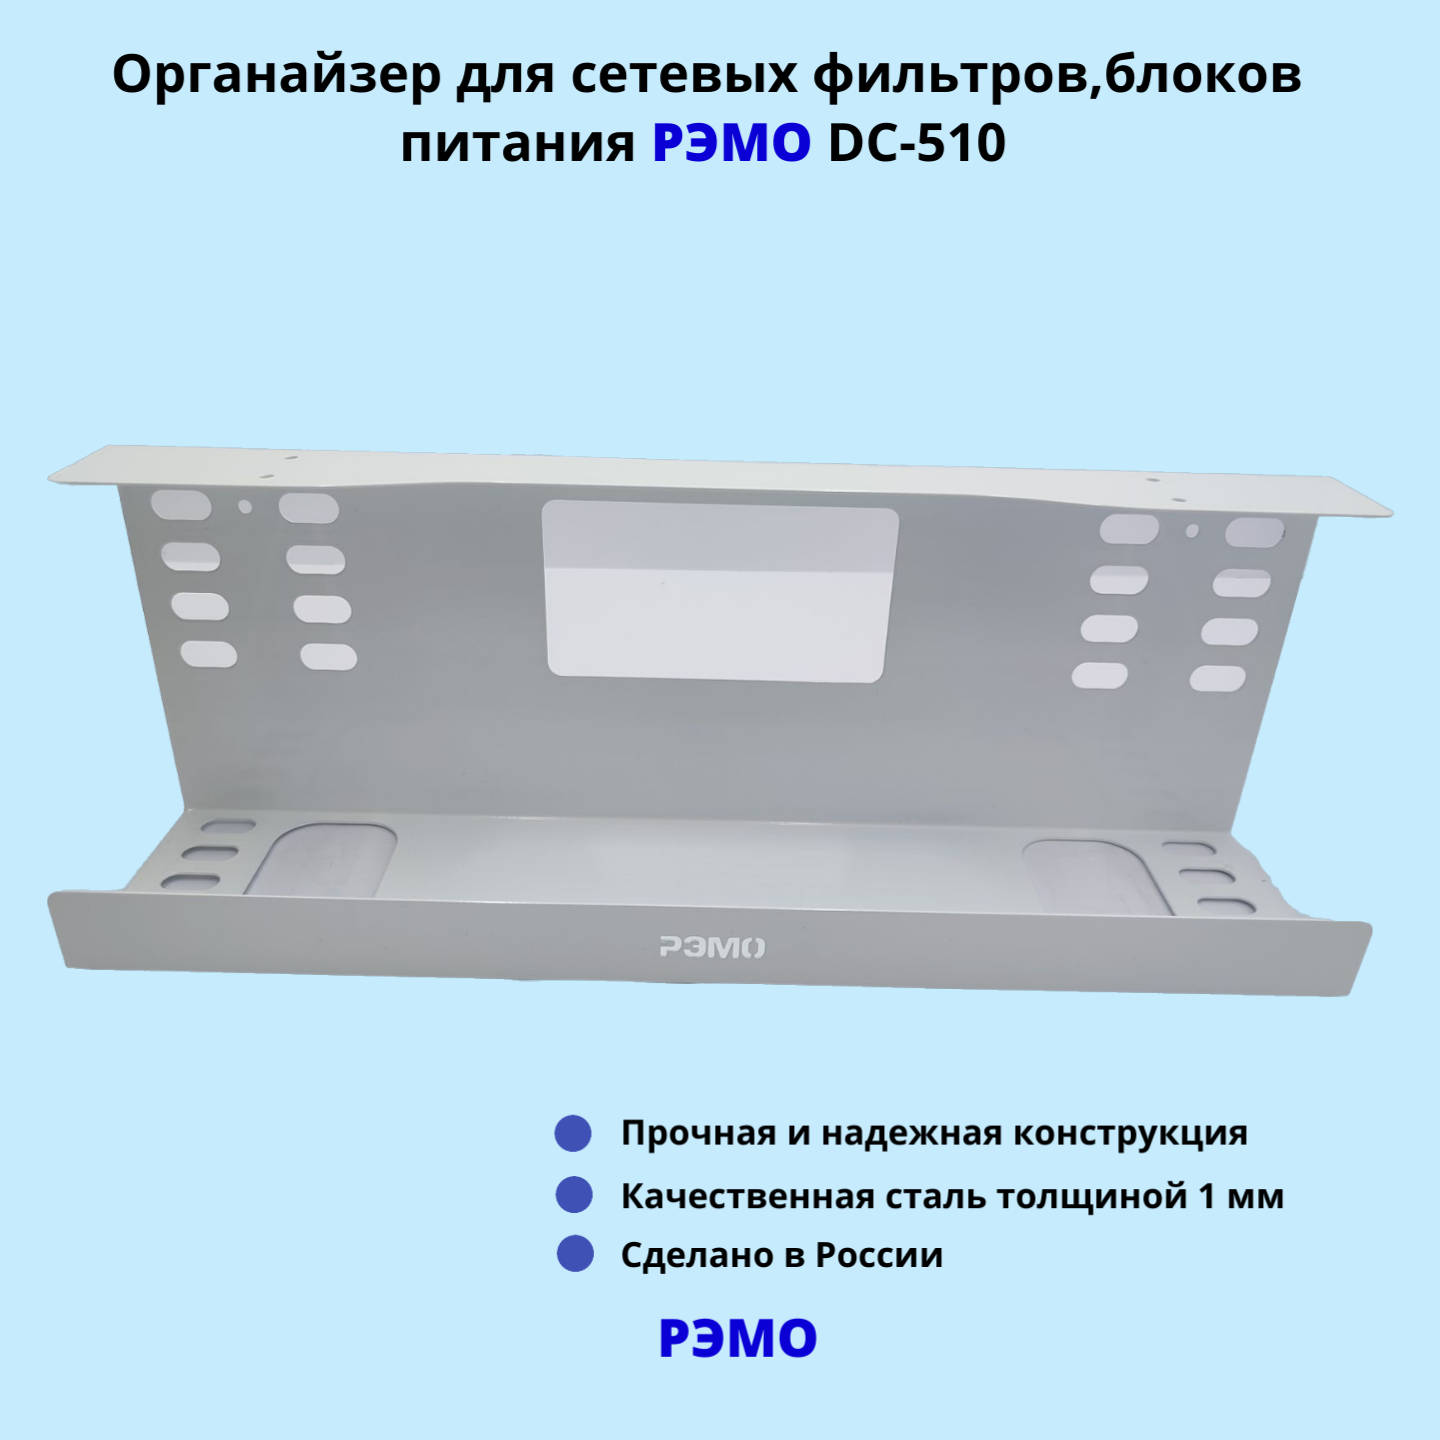 Кабельный органайзер для сетевых фильтров, блоков питания РЭМО DC-510, белый